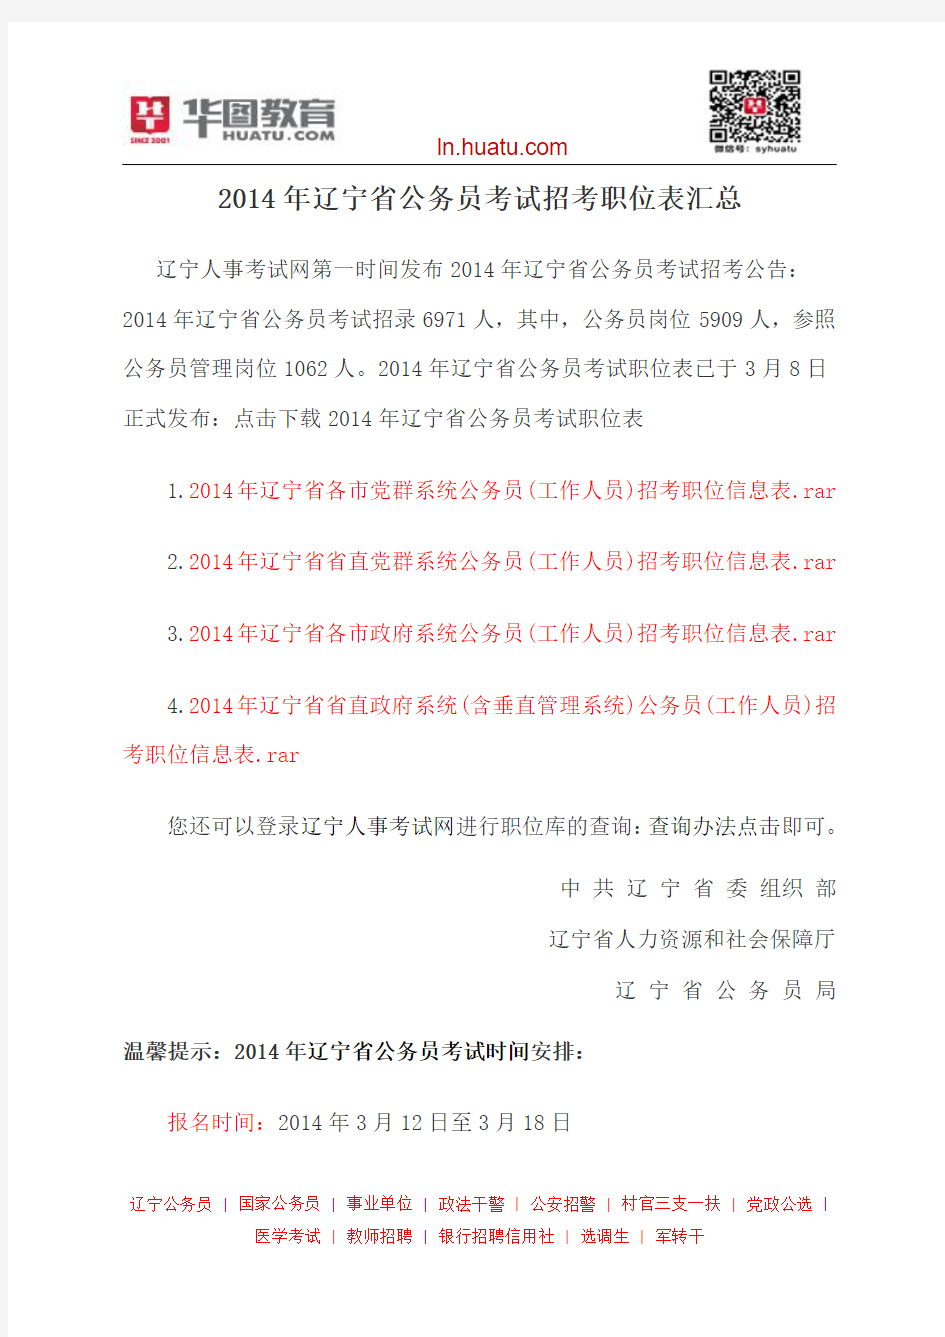 2014年辽宁省公务员考试招考职位表汇总